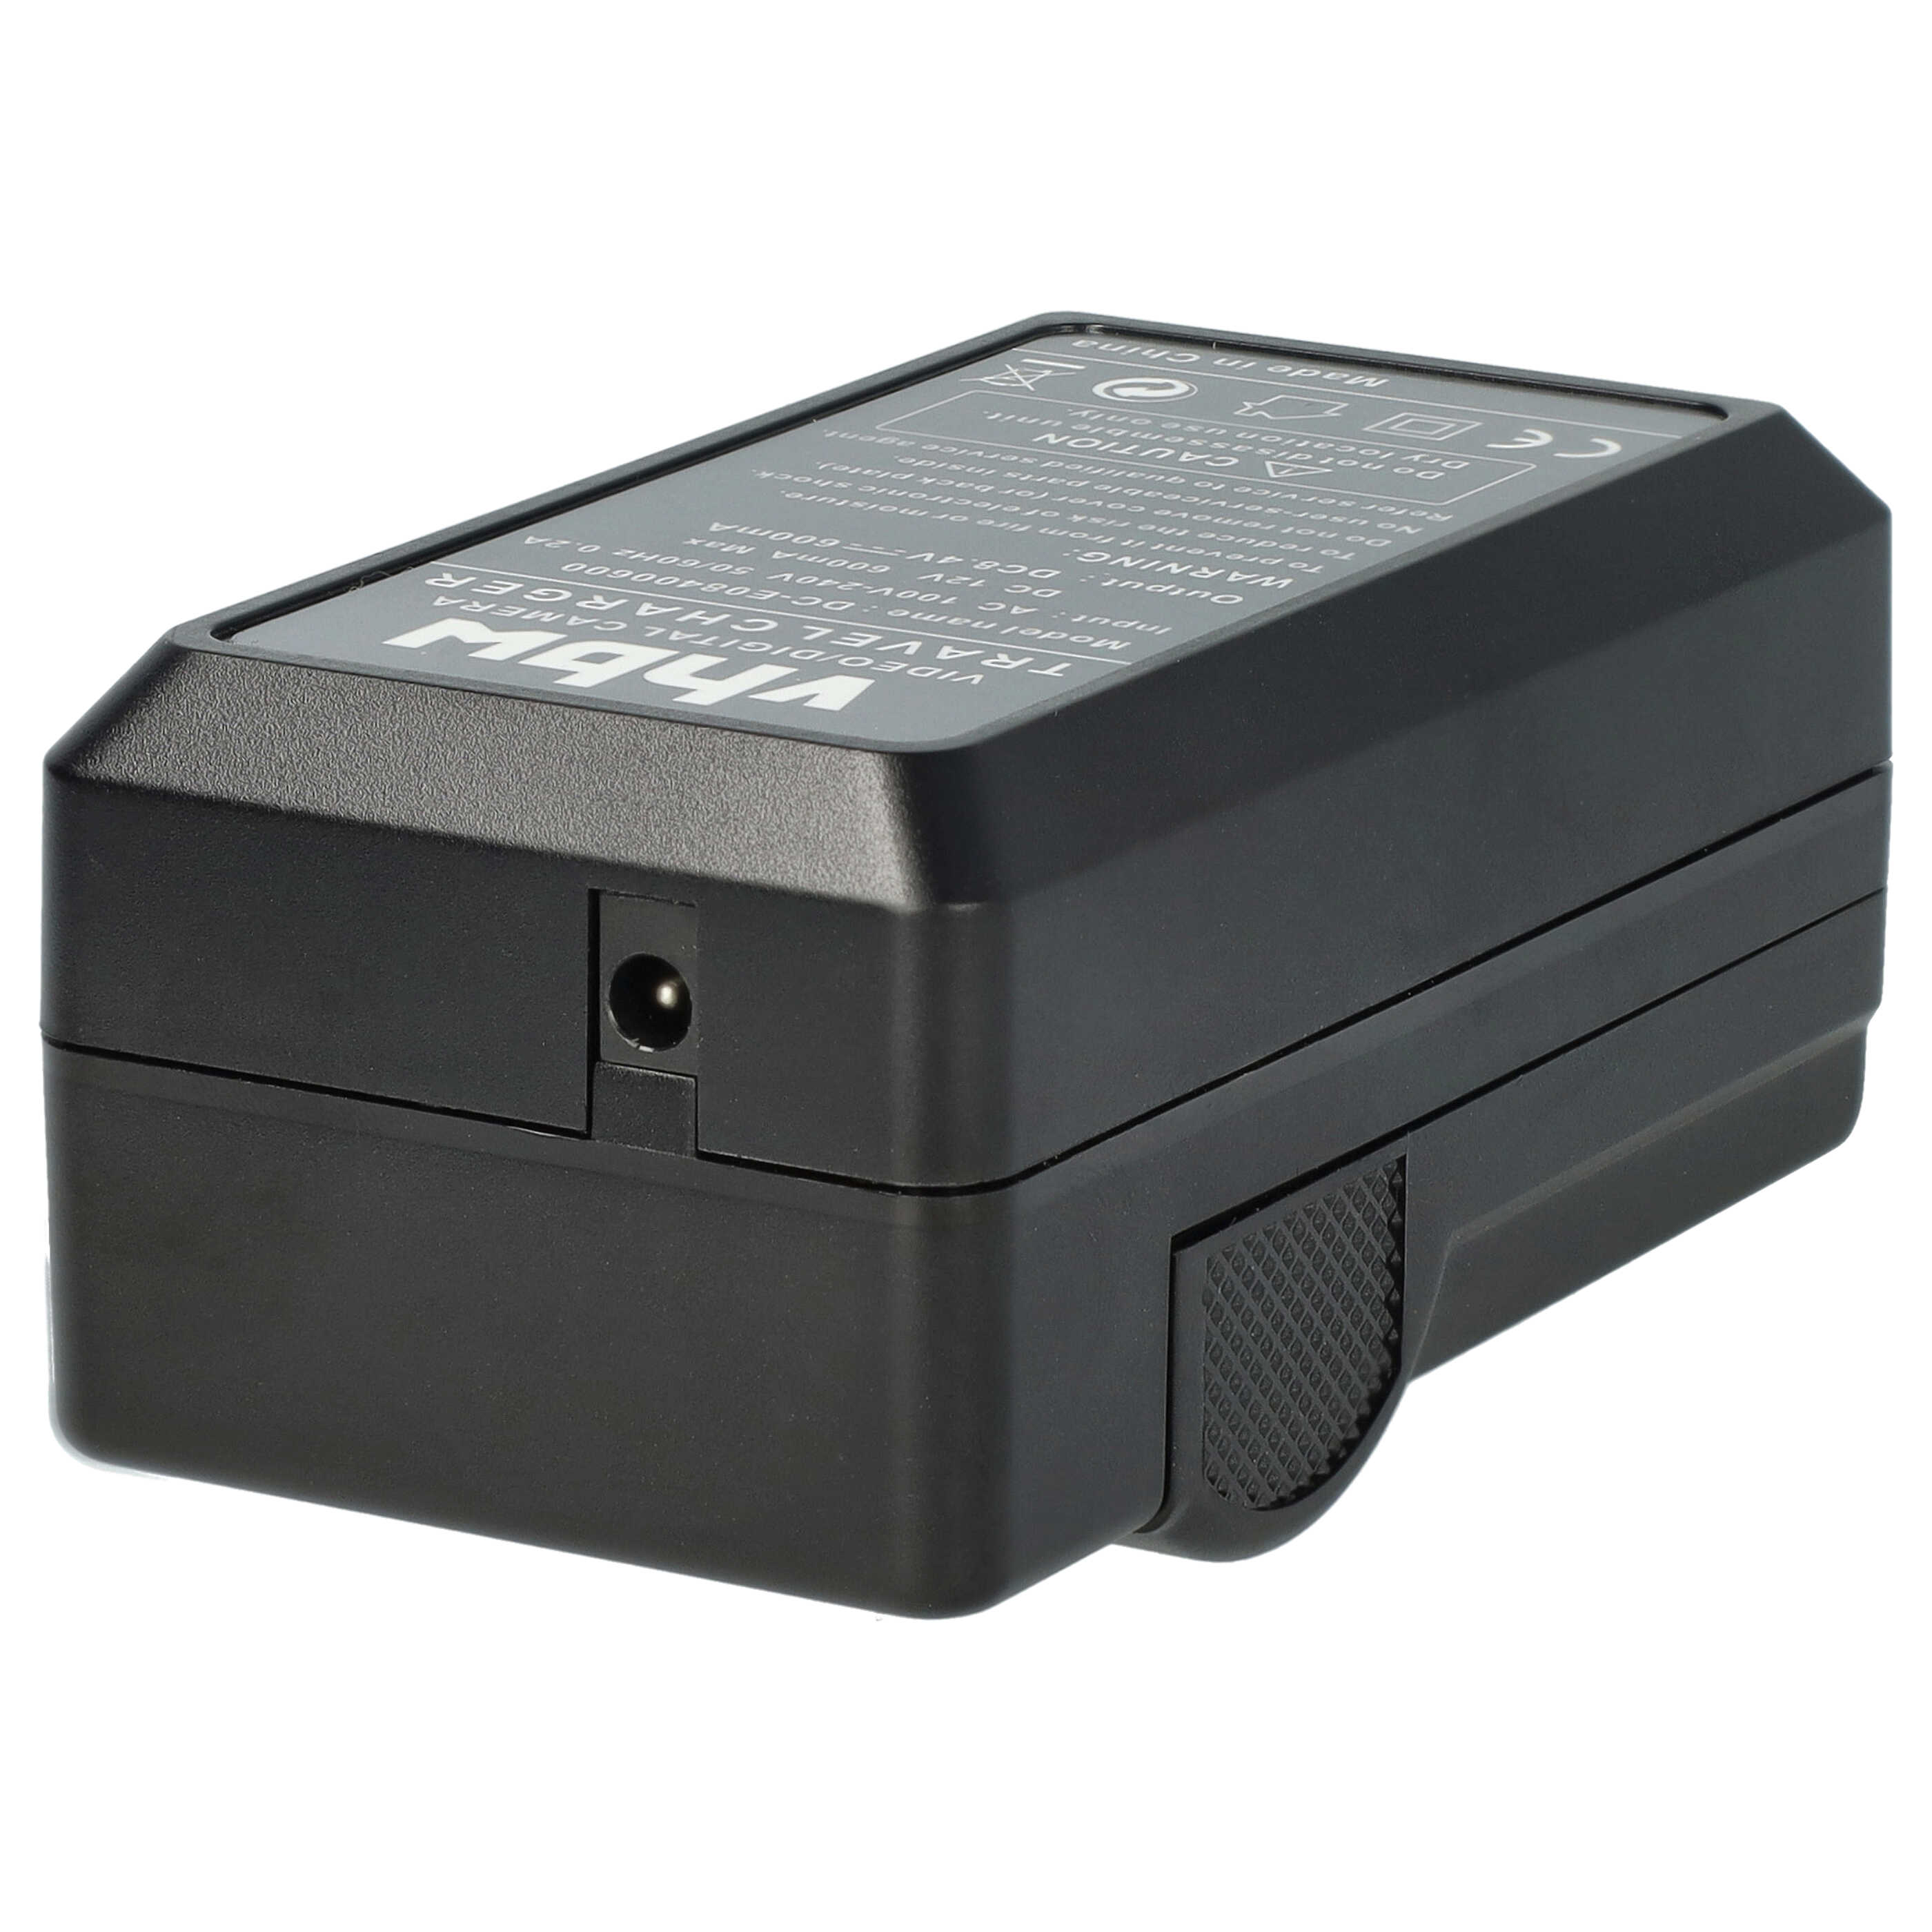 Akku Ladegerät passend für X-E1 Kamera u.a. - 0,6 A, 8,4 V